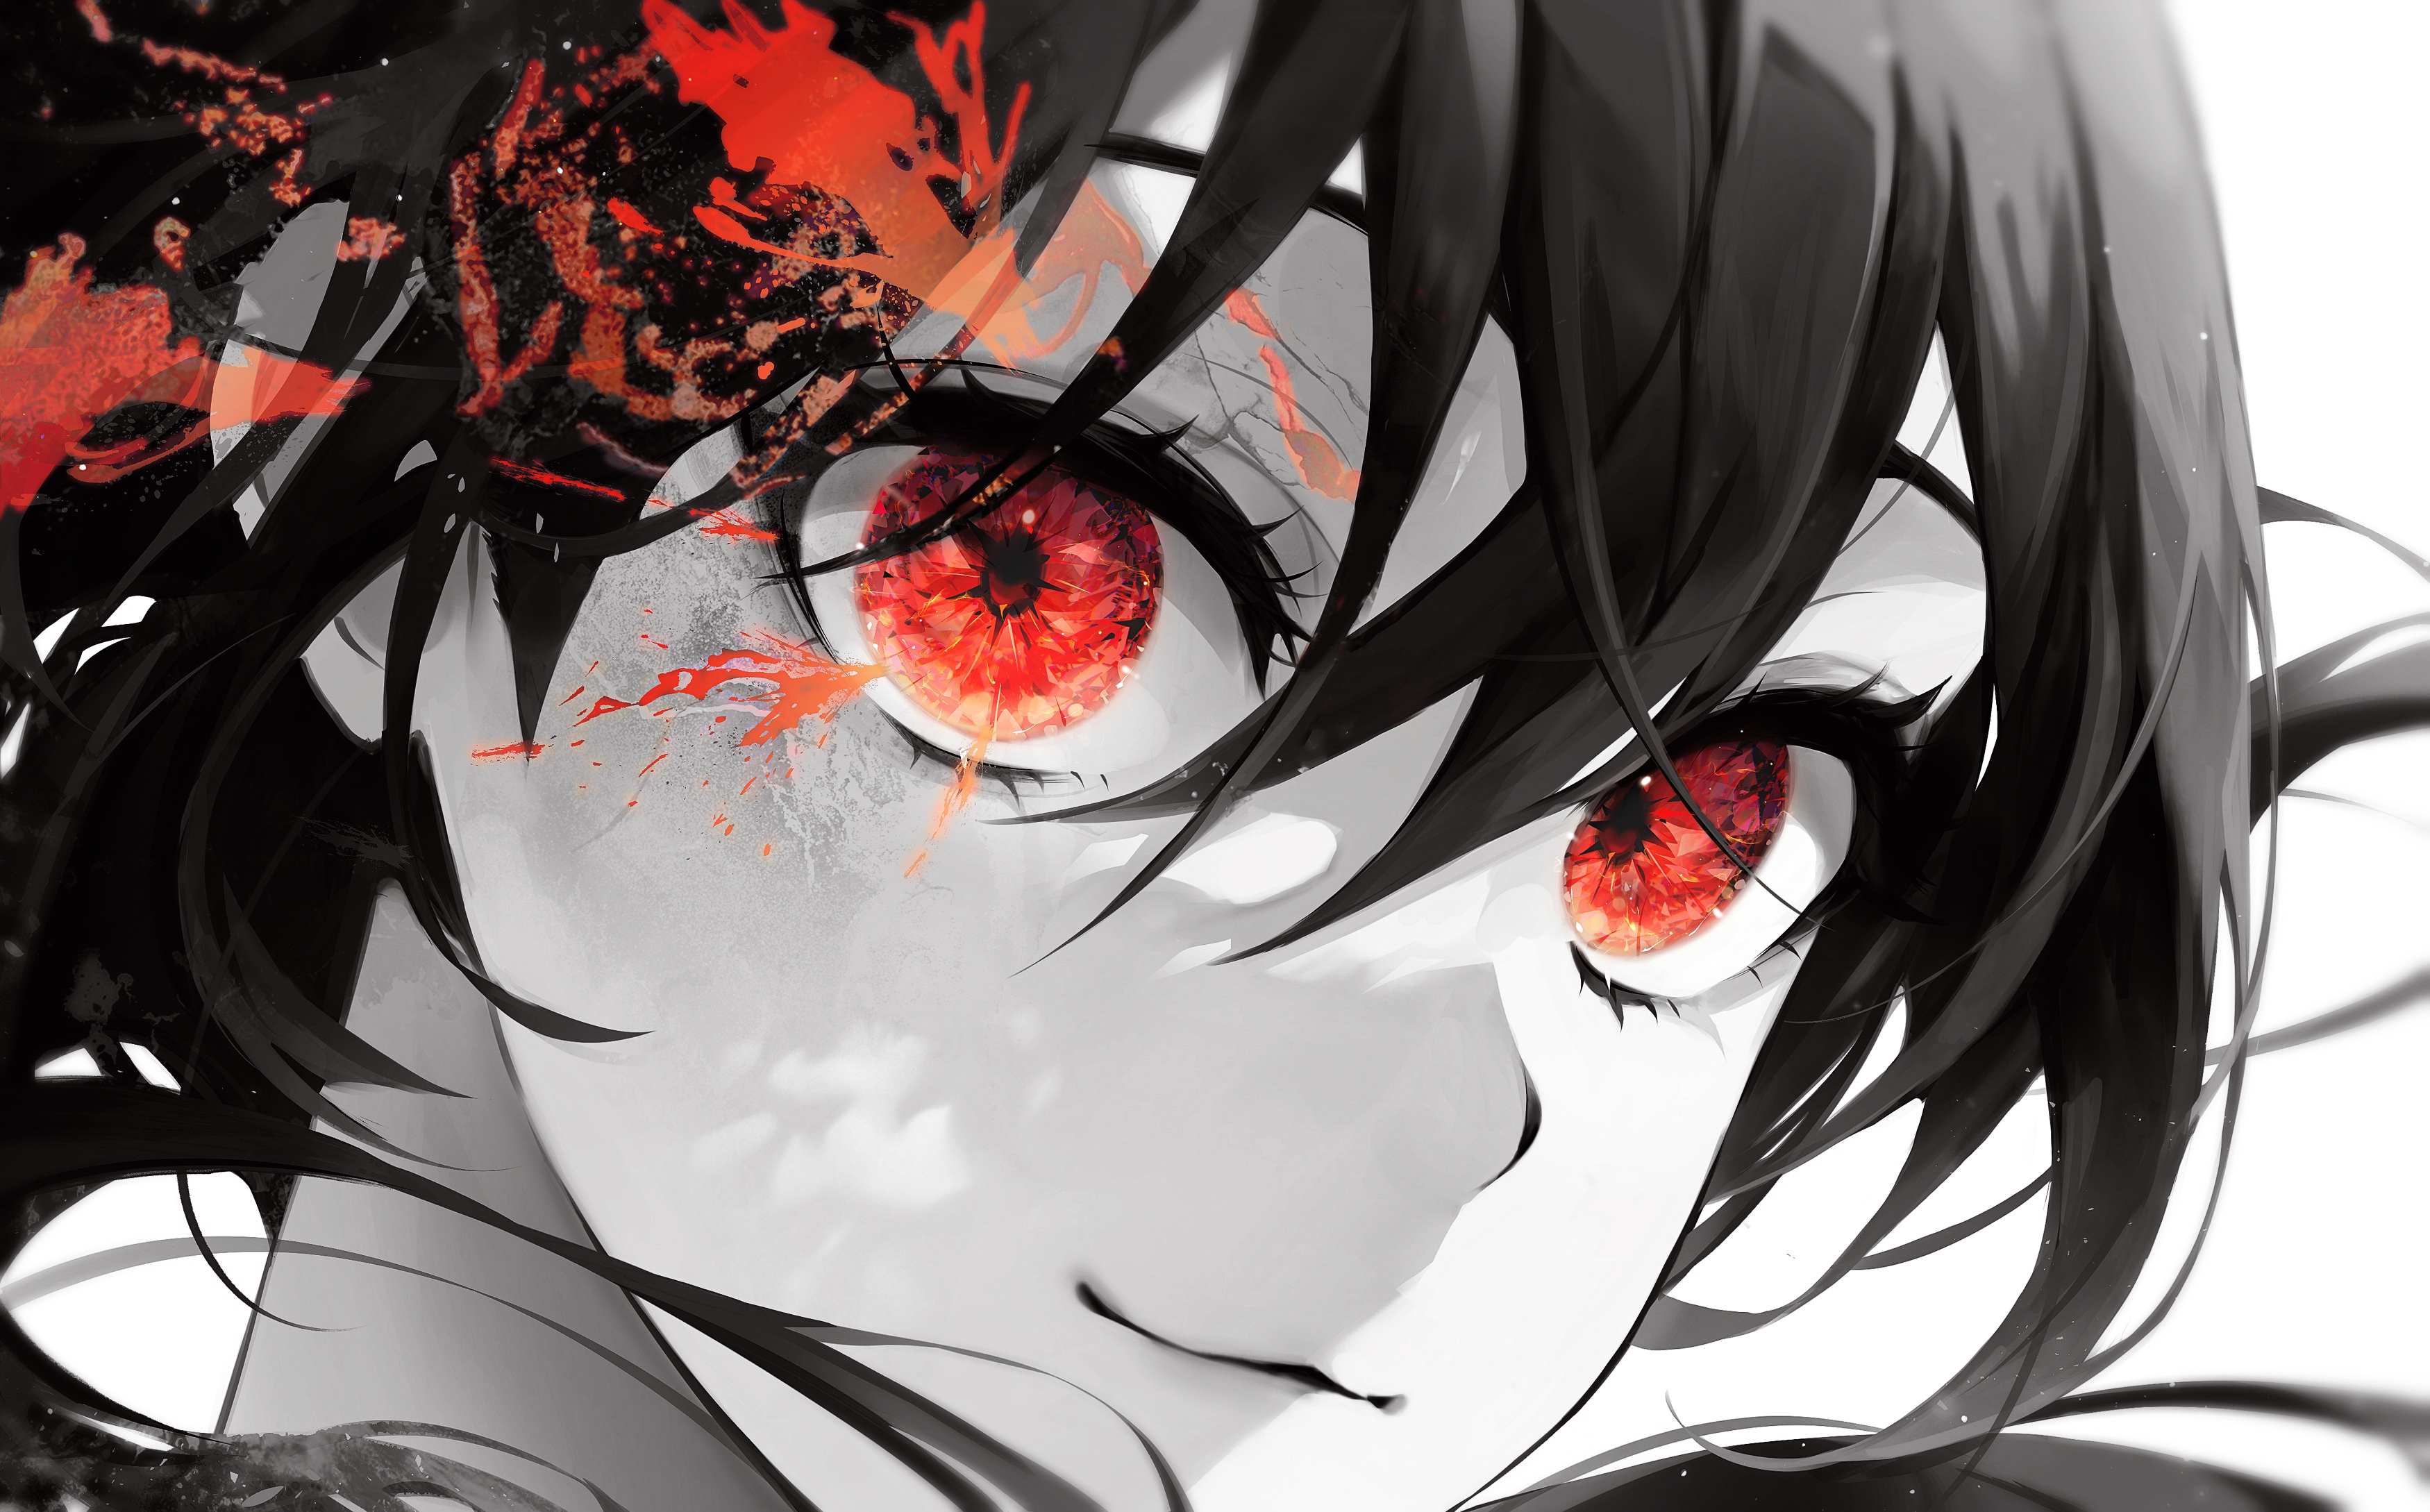 close up eyes manga style design Stock Vector Image & Art - Alamy